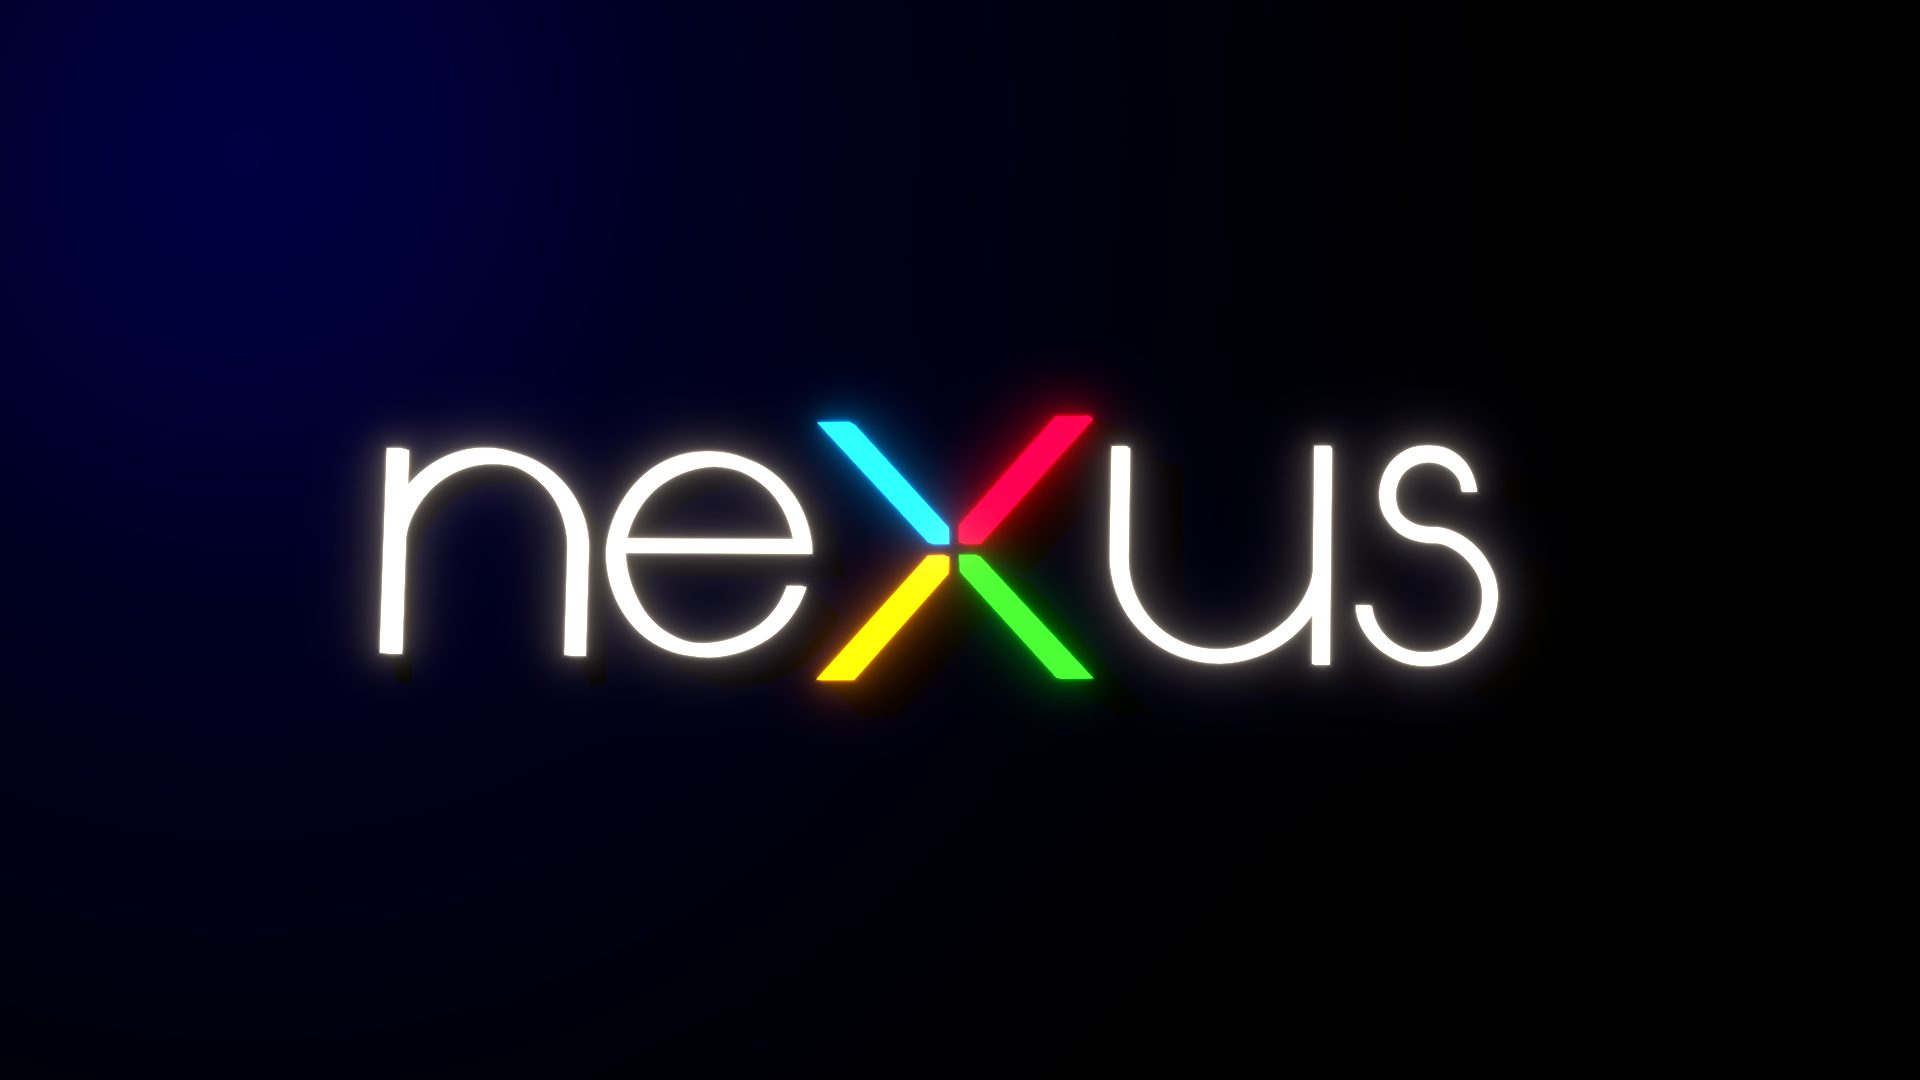 Rumor: Nexus Launcher Is Getting Changed